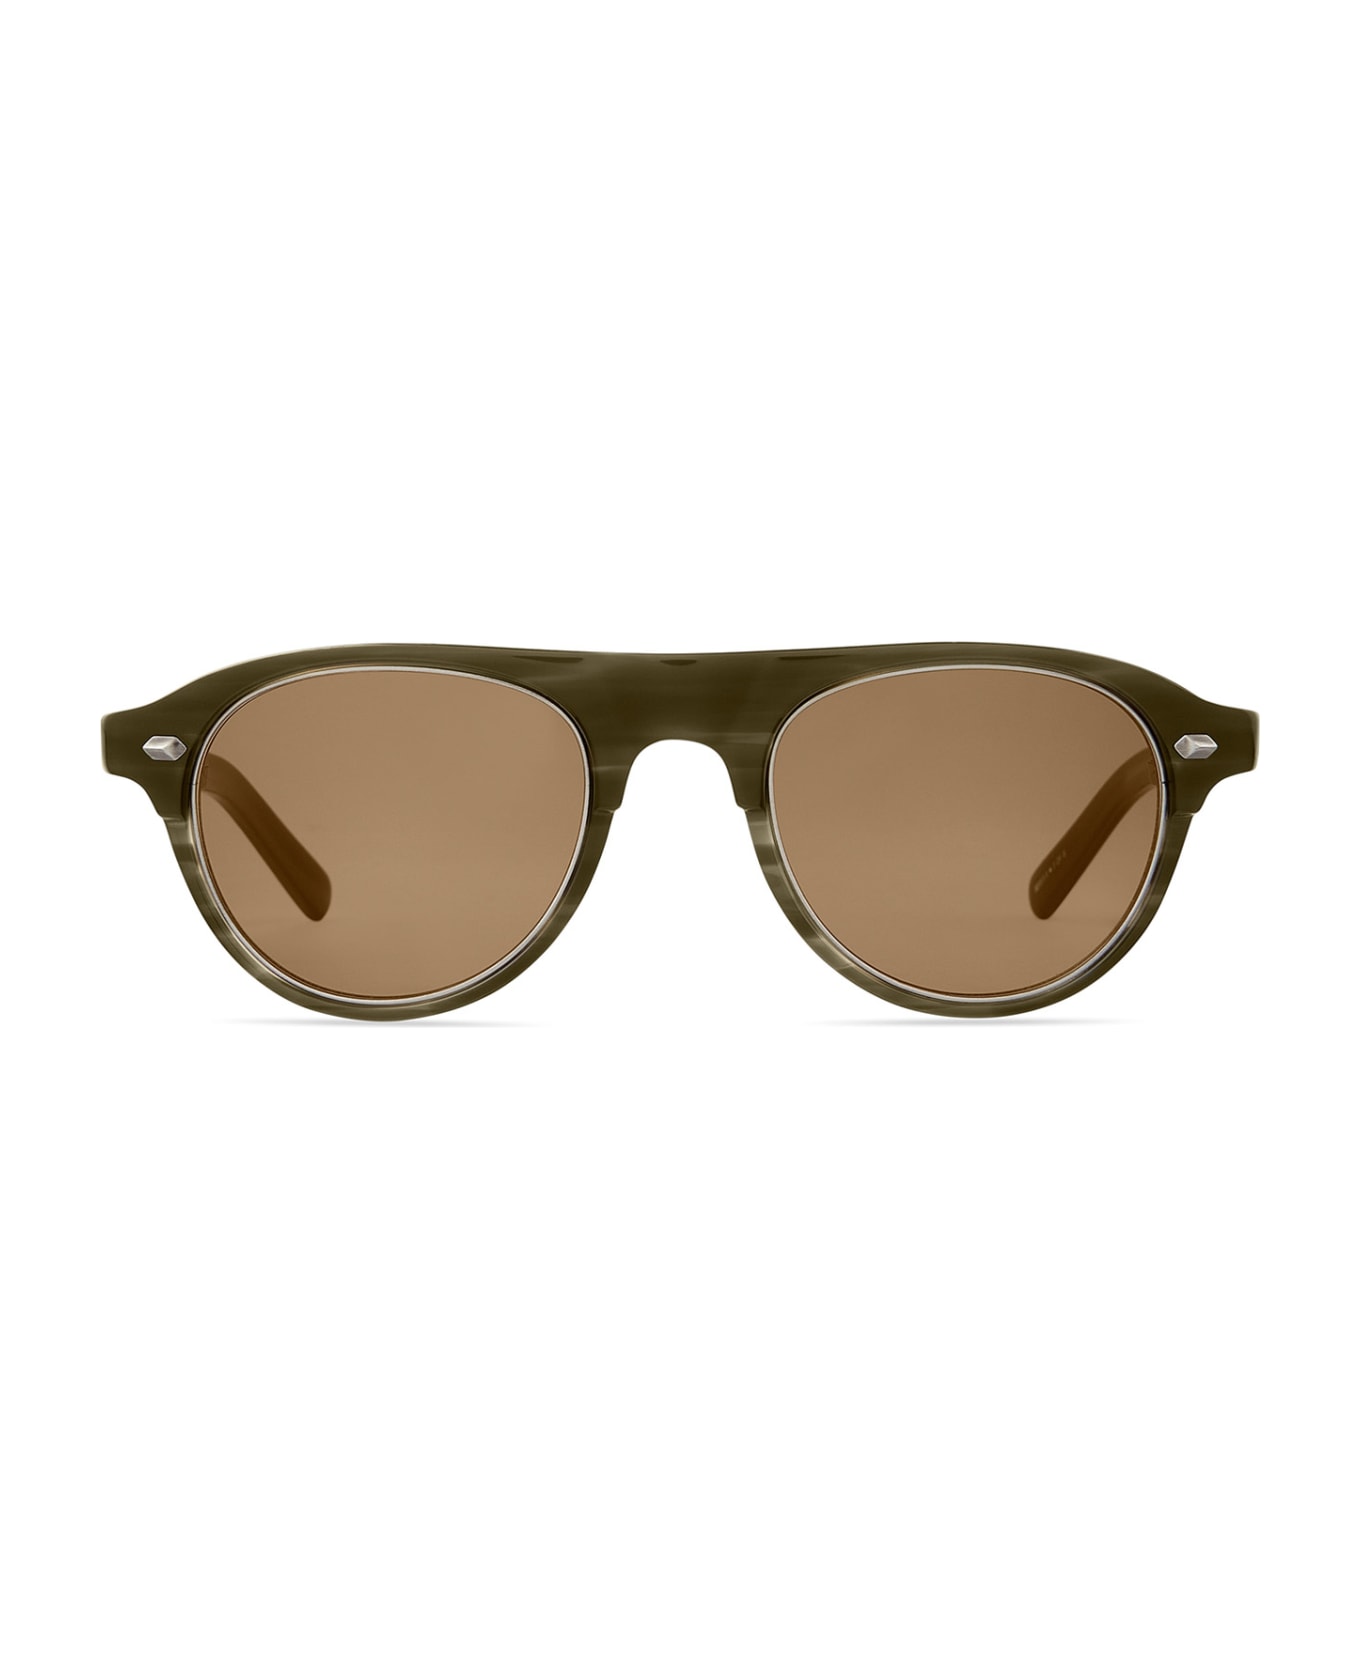 Mr. Leight Stahl S Kelp-pewter/molasses Sunglasses - Kelp-Pewter/Molasses